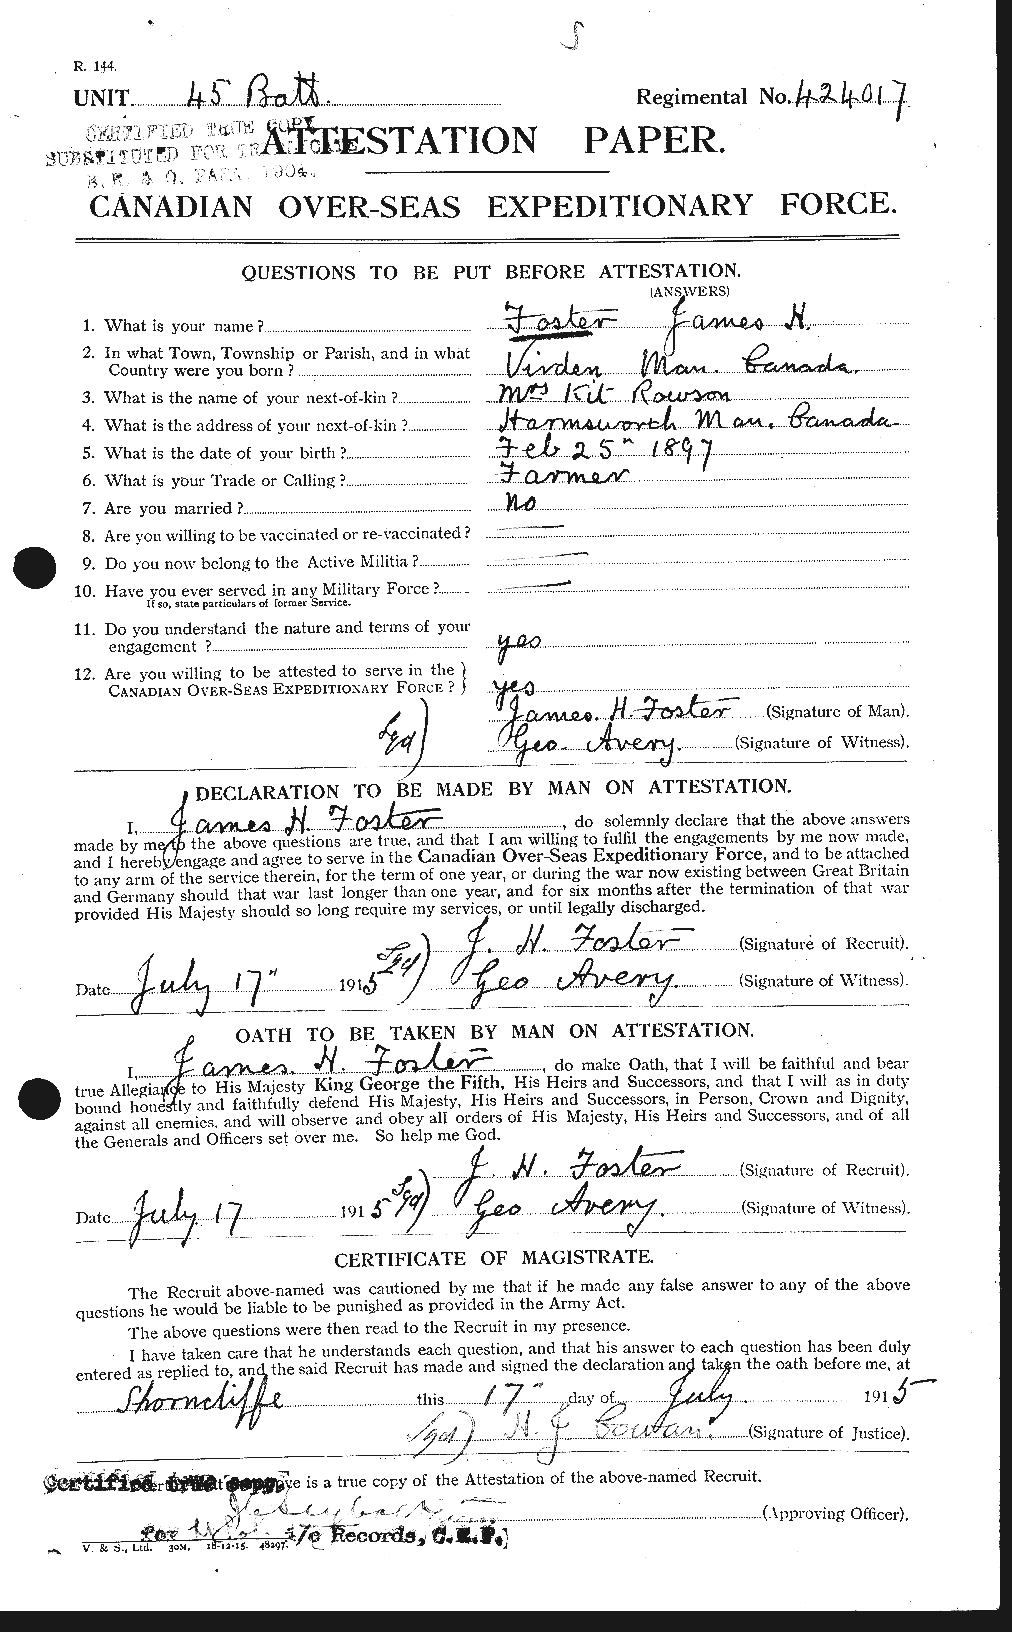 Dossiers du Personnel de la Première Guerre mondiale - CEC 333305a